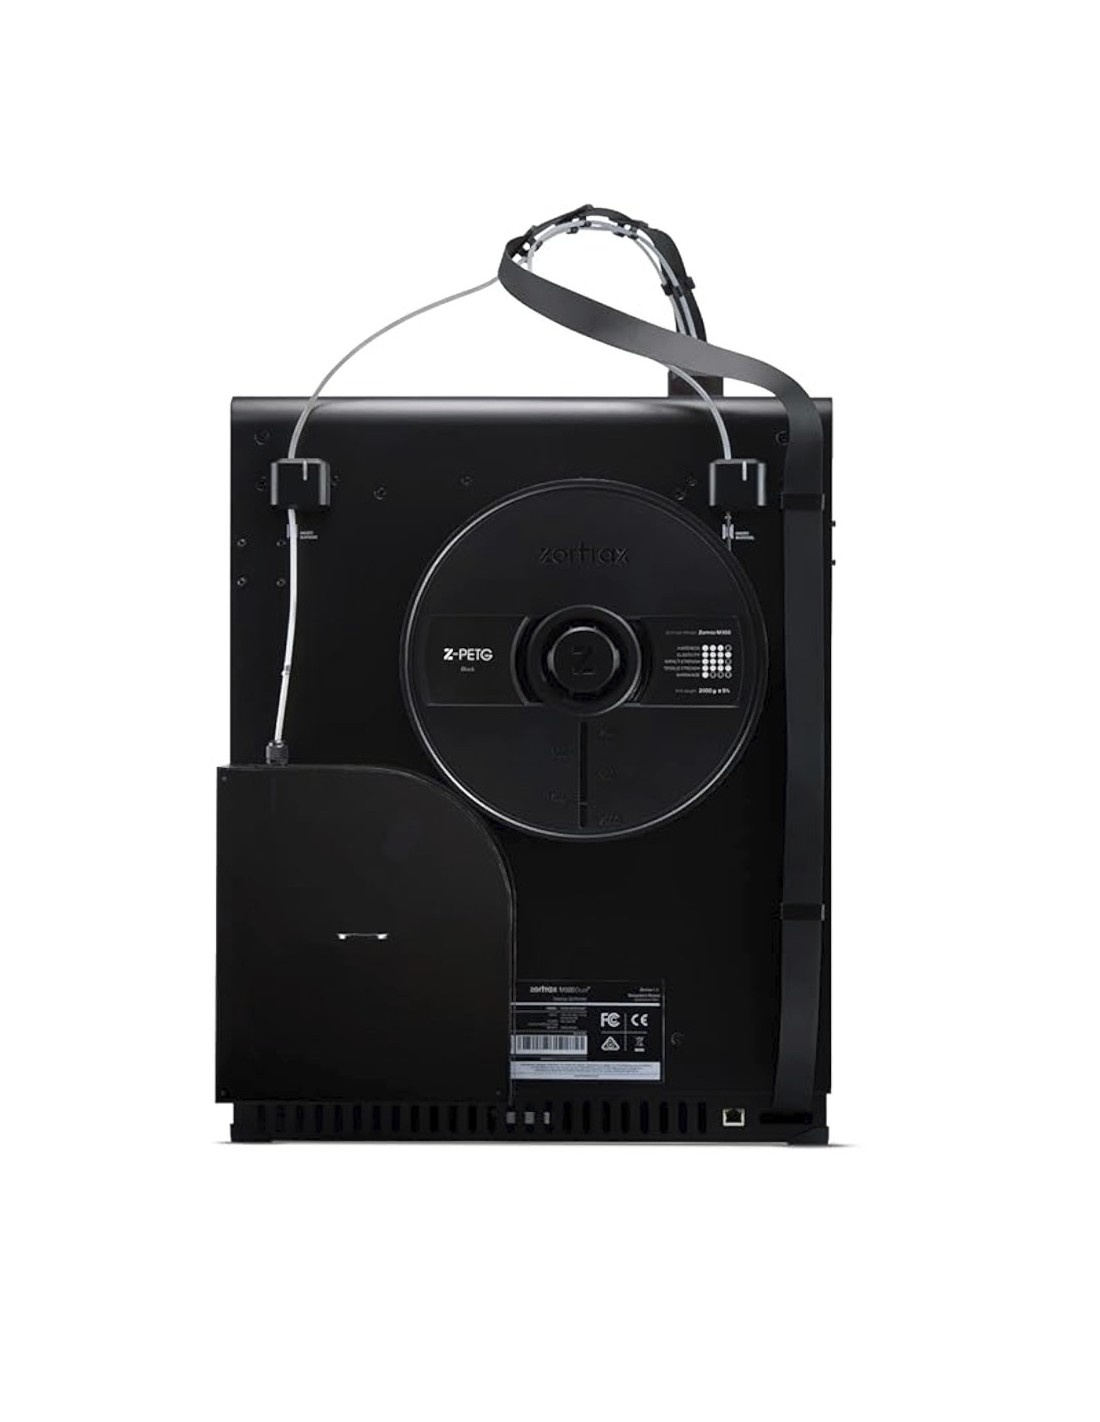 Zortrax M300 Dual - Impressora 3D